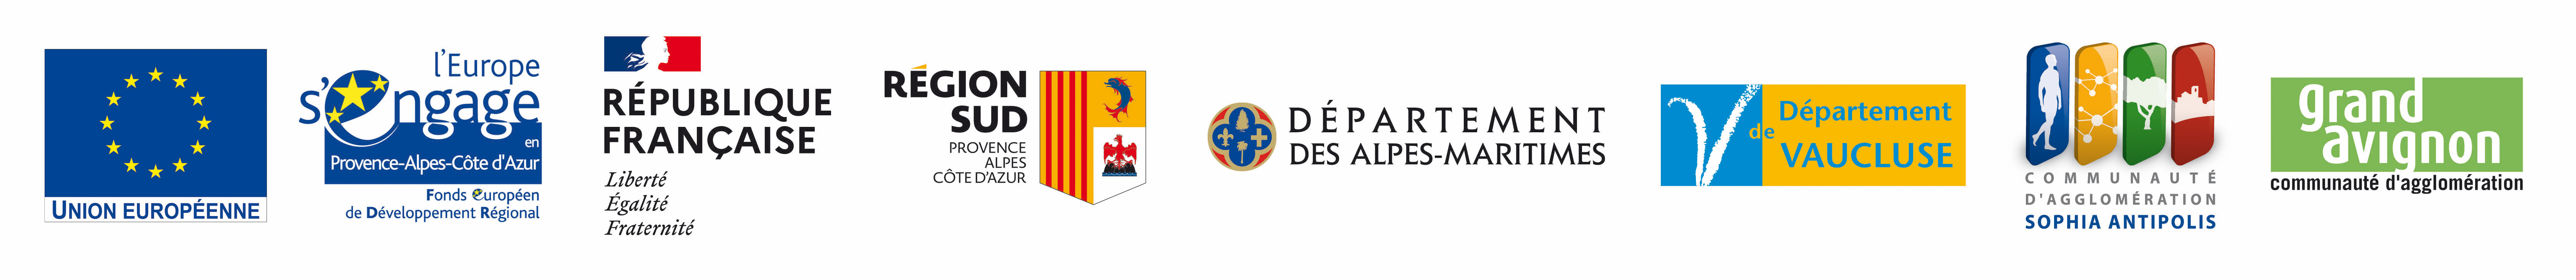 Partenaires financiers du centre de recherche Provence-Alpes-Côte d'Azur